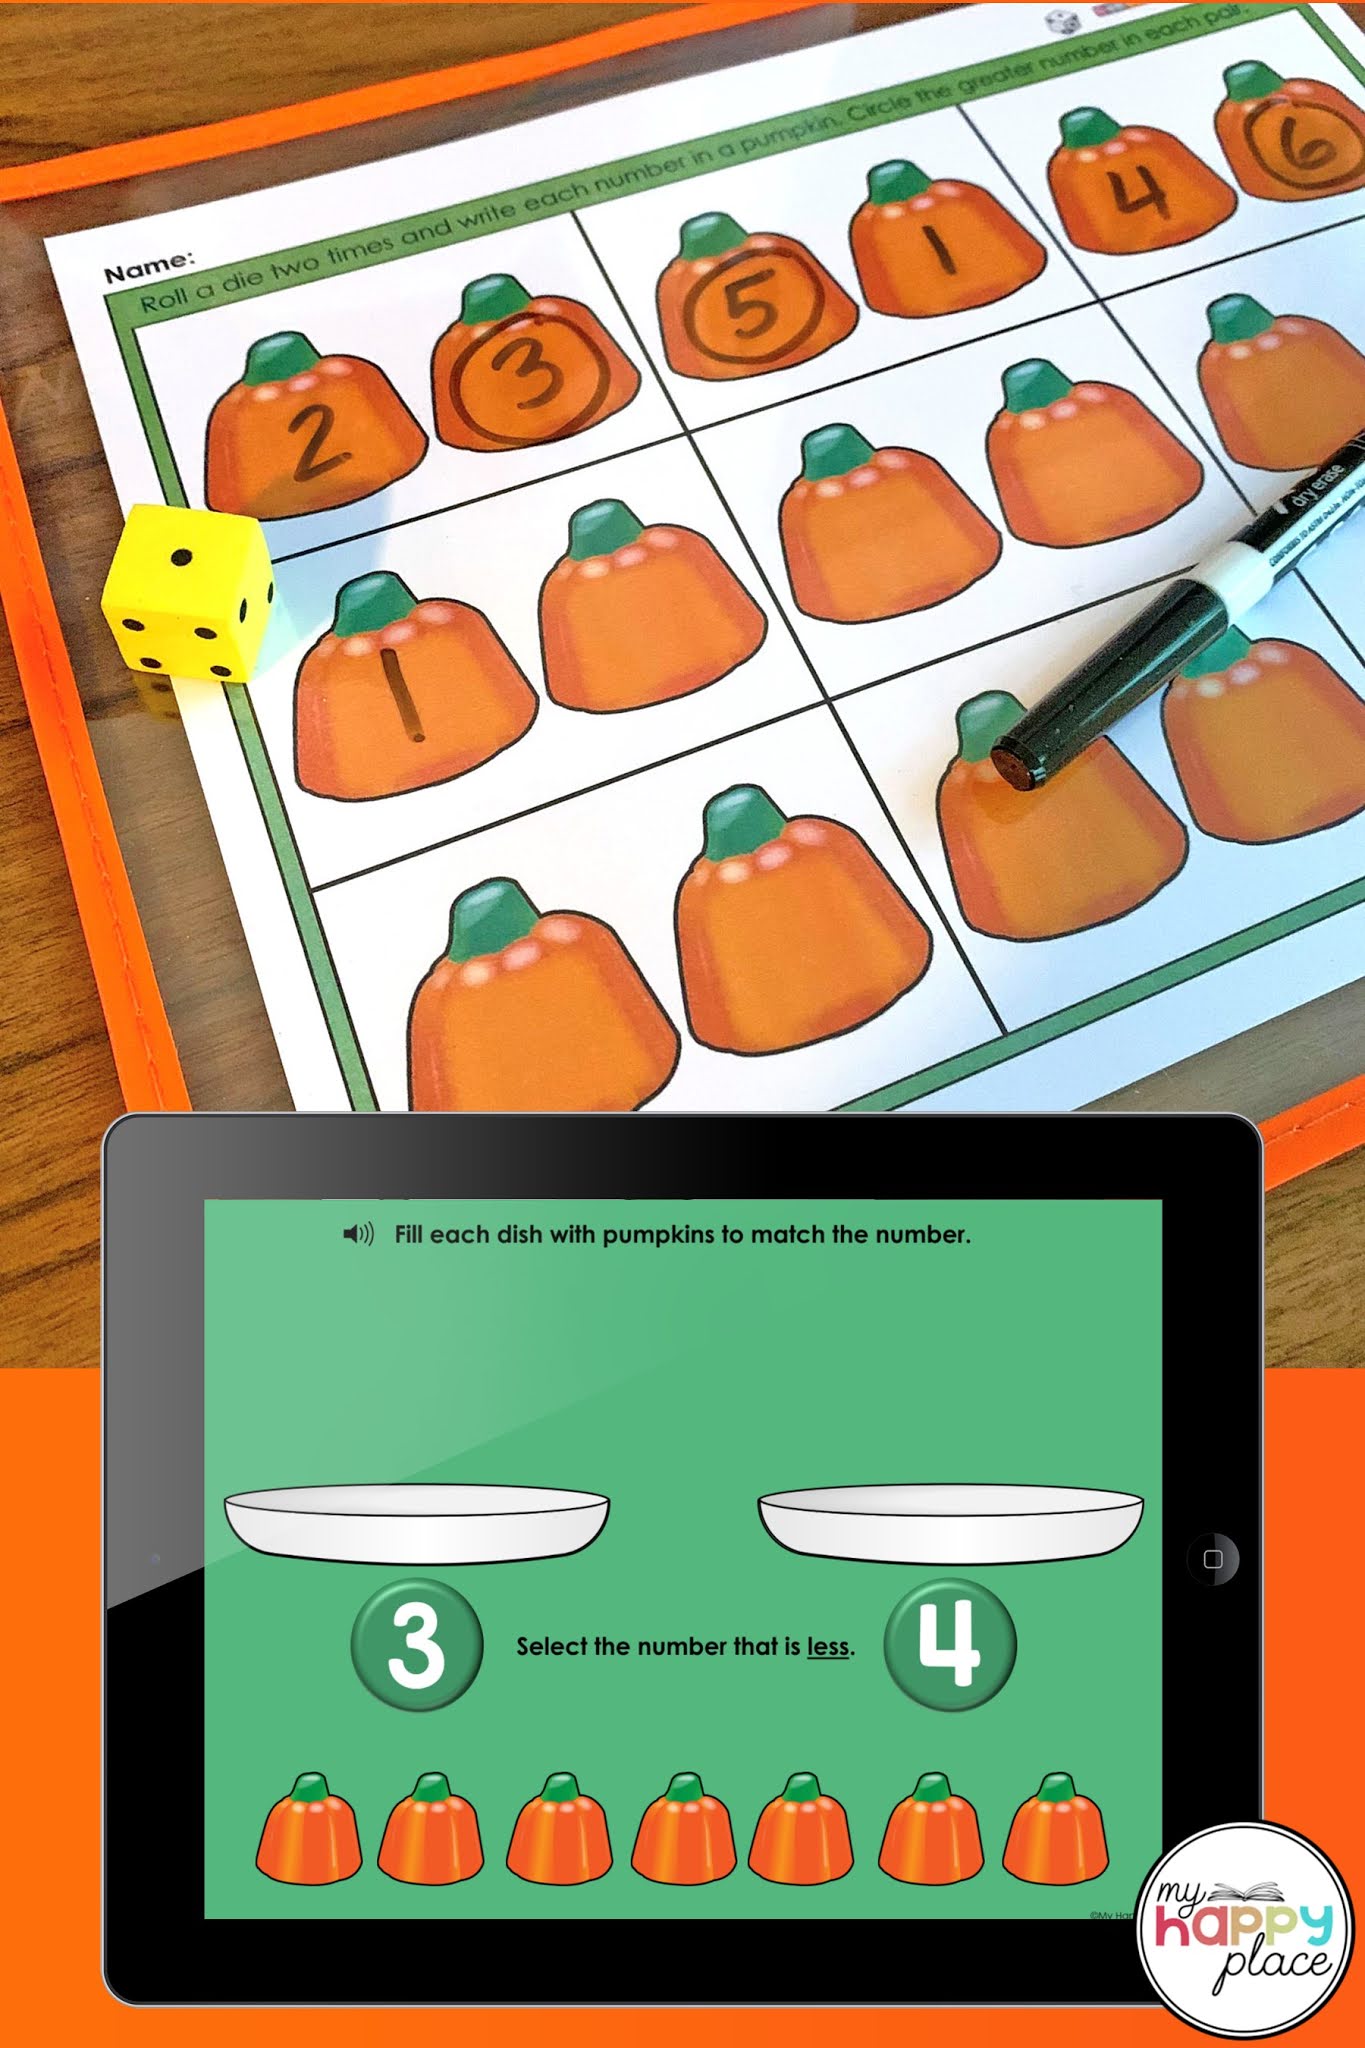 my-happy-place-teaching-comparing-numbers-0-5-pumpkin-freebies-in-digital-print